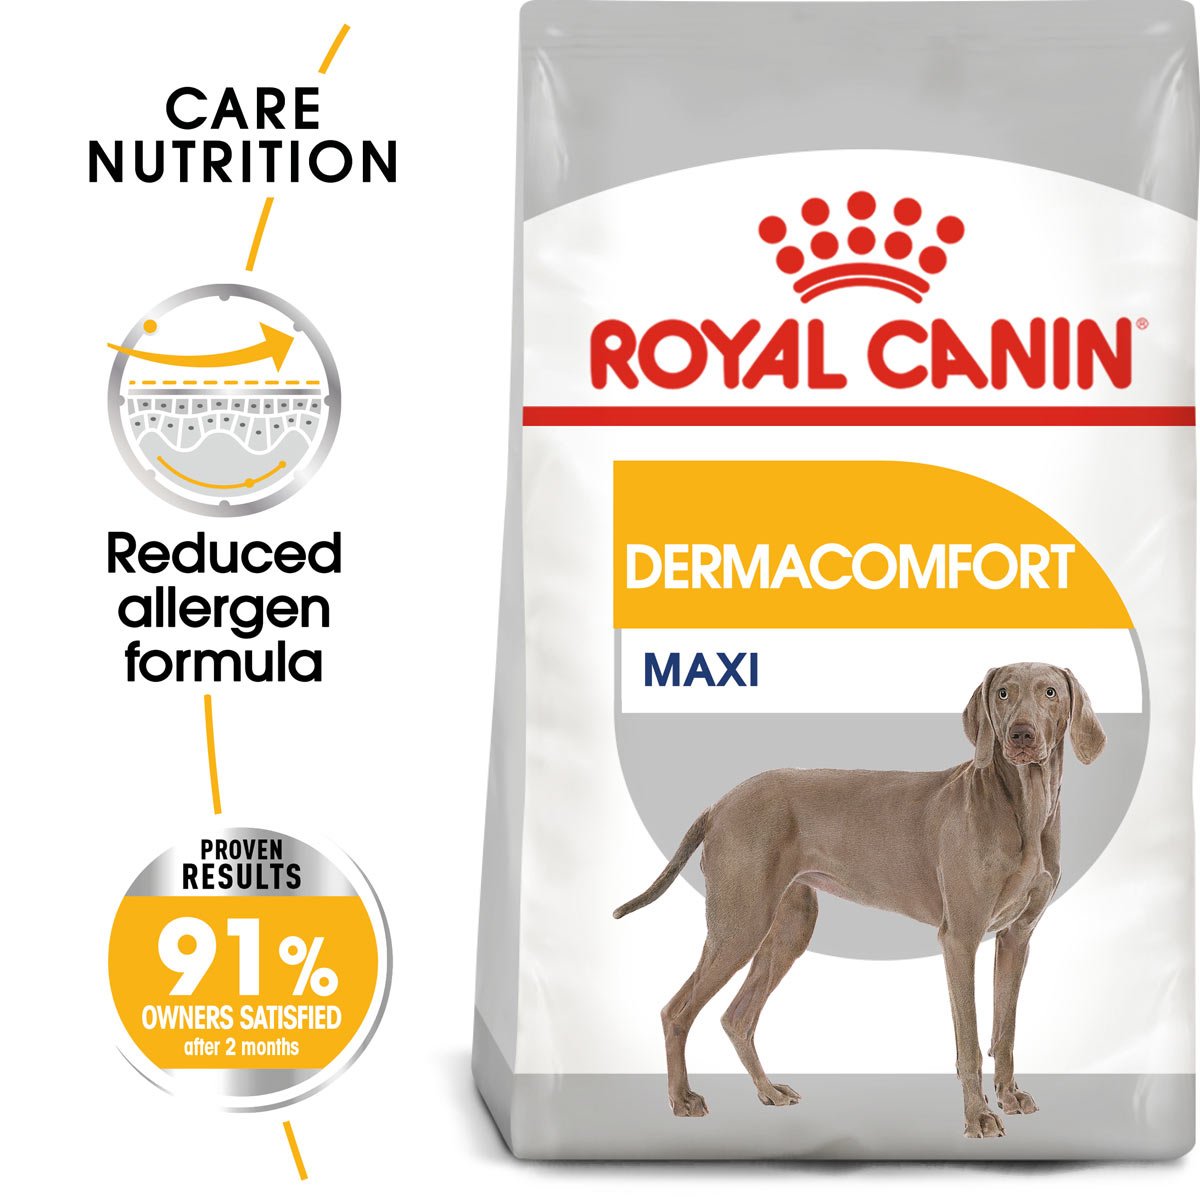 ROYAL CANIN DERMACOMFORT MAXI granule pro velké psy s citlivou kůží 3 kg